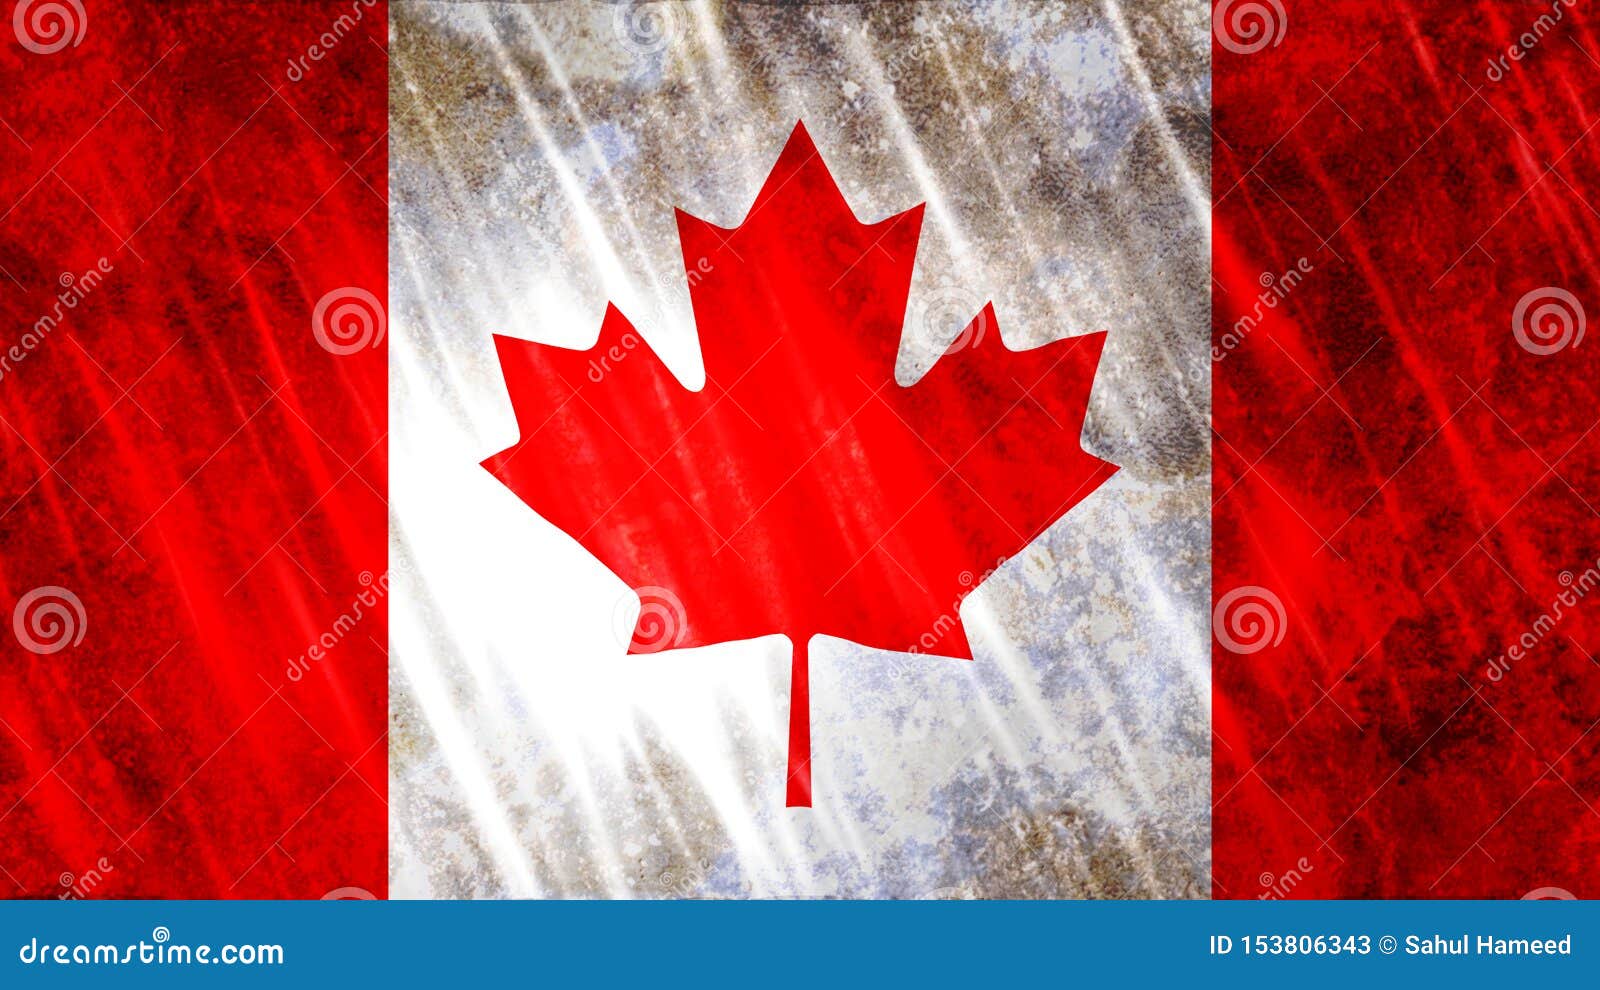 De Vlag Van Canada Stock Afbeelding. Image Of Grunge - 153806343